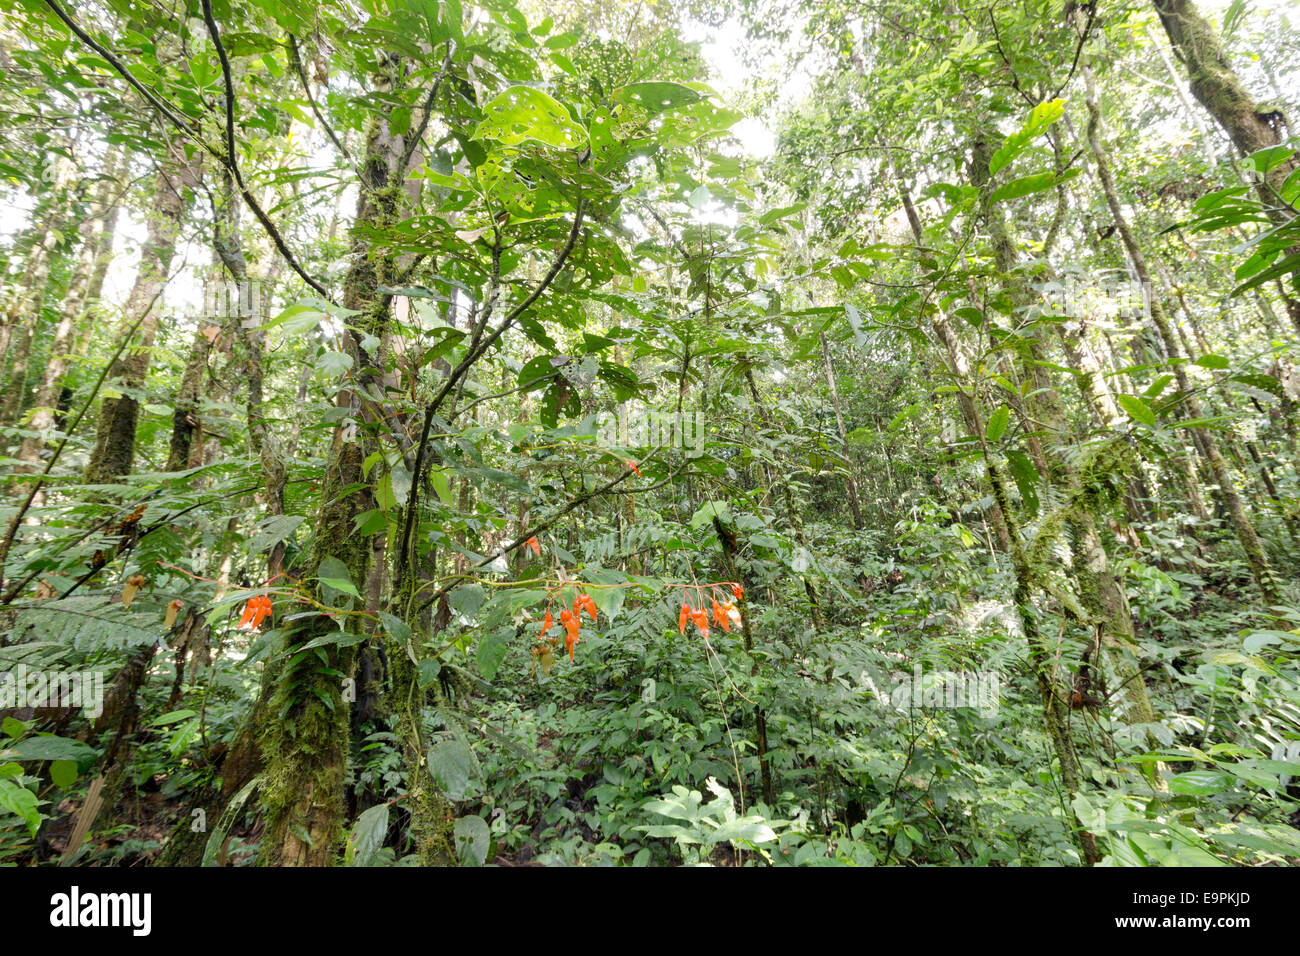 Interno della foresta pluviale tropicale in Amazzonia ecuadoriana con una fioritura di Begonia in primo piano Foto Stock